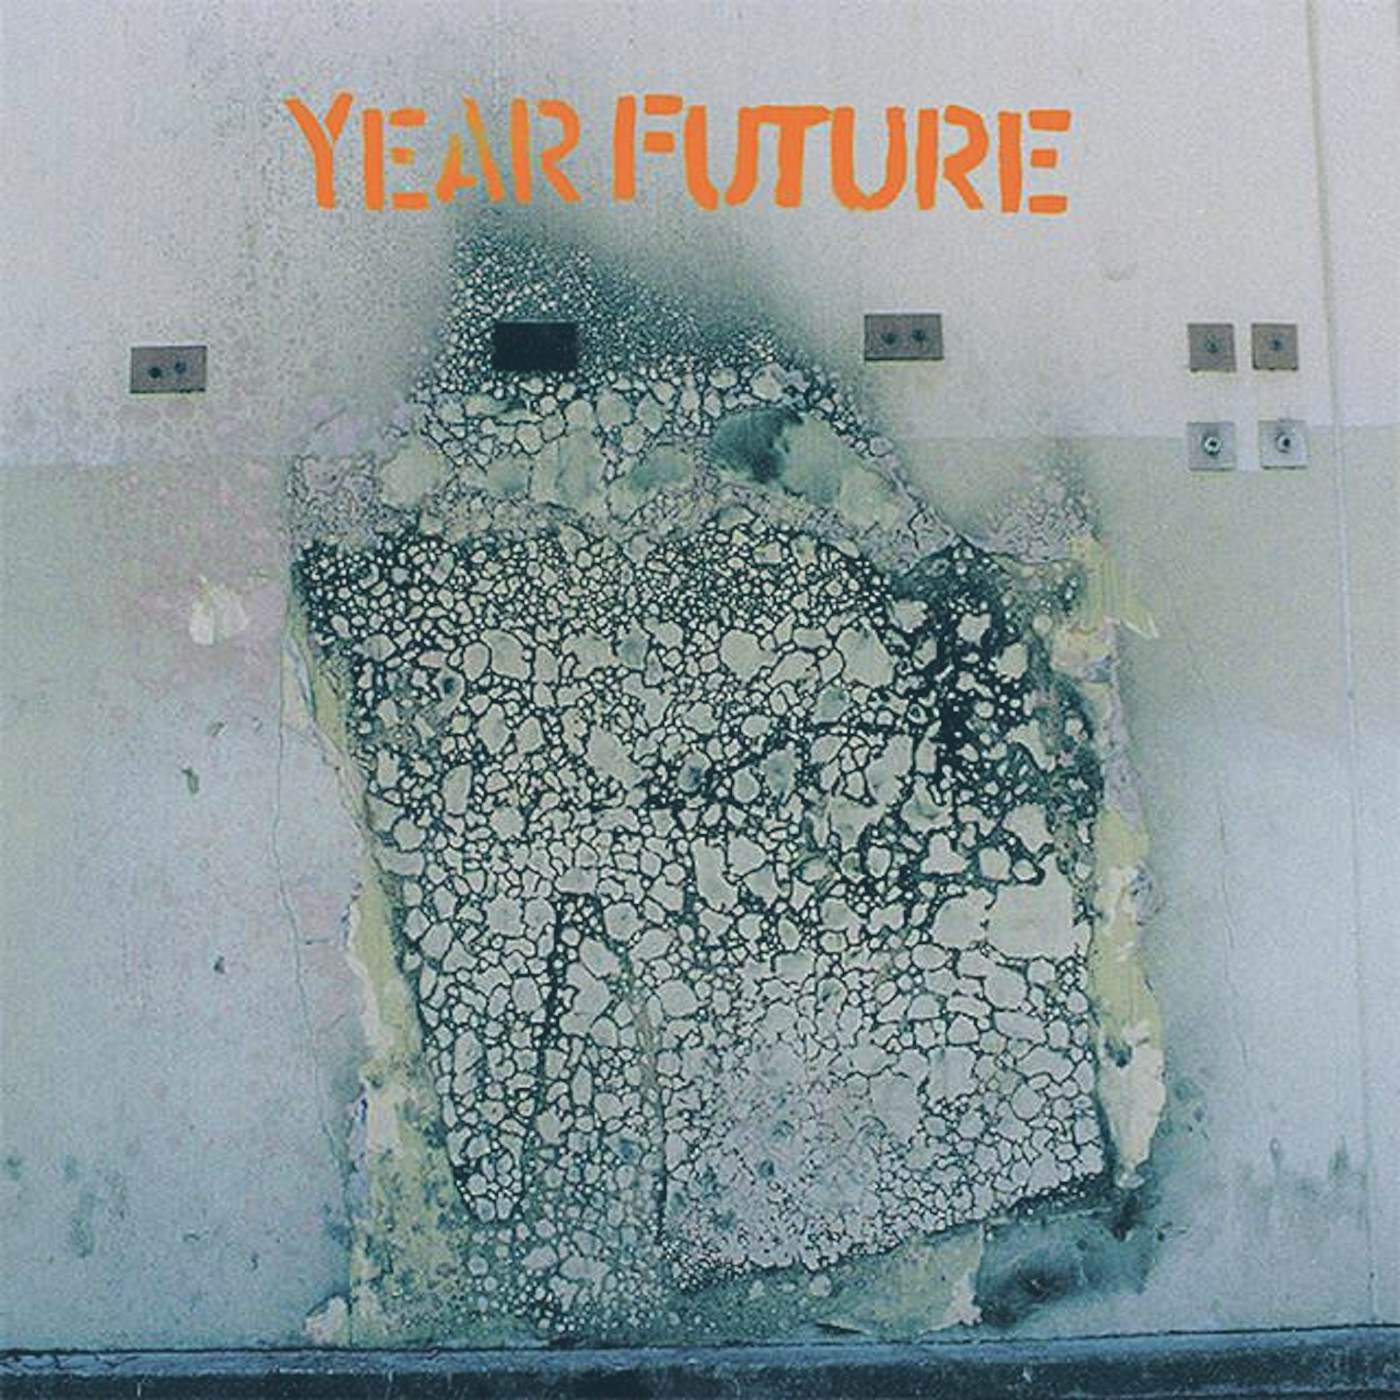 Year Future